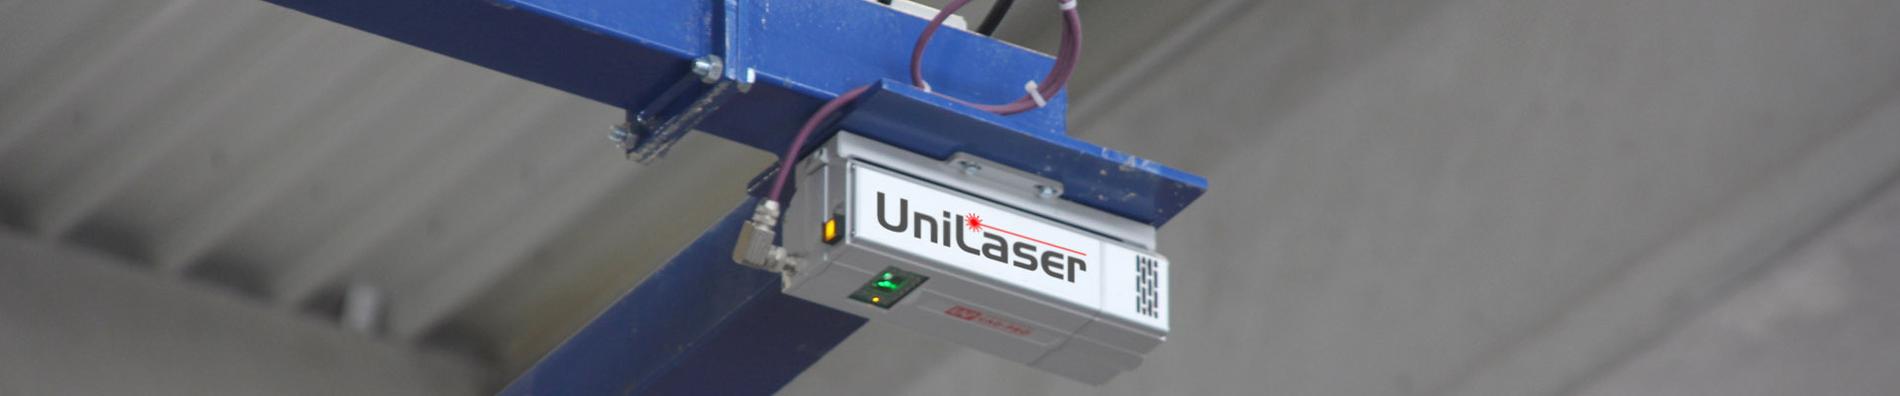 UniLaser Laser Projektionssteuerung, UniLaser, Steigerung, Produktivität, Qualität, Betonfertigteilproduktion, Betonfertigteiltechnik